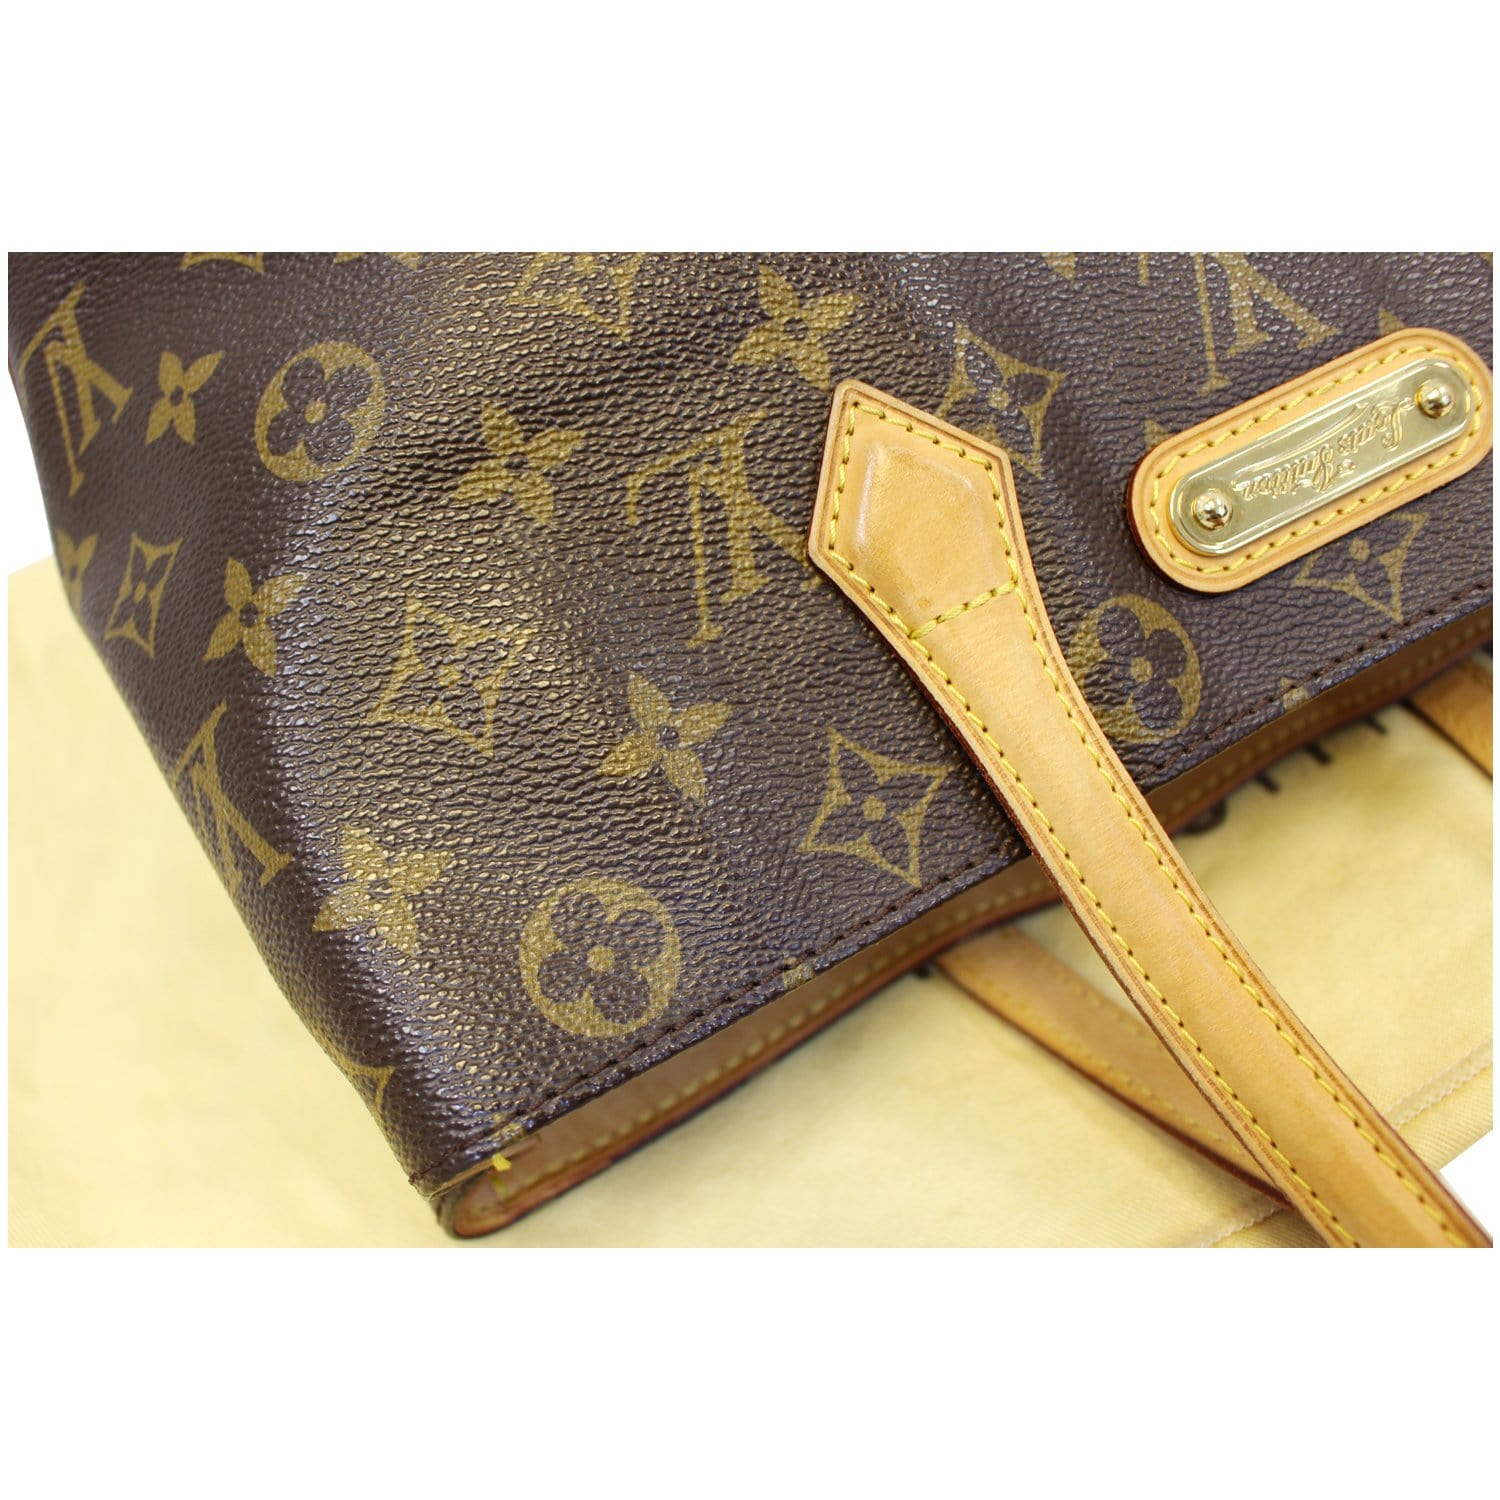 Louis Vuitton Wilshire PM Monogram Canvas Satchel Handbag E5015 